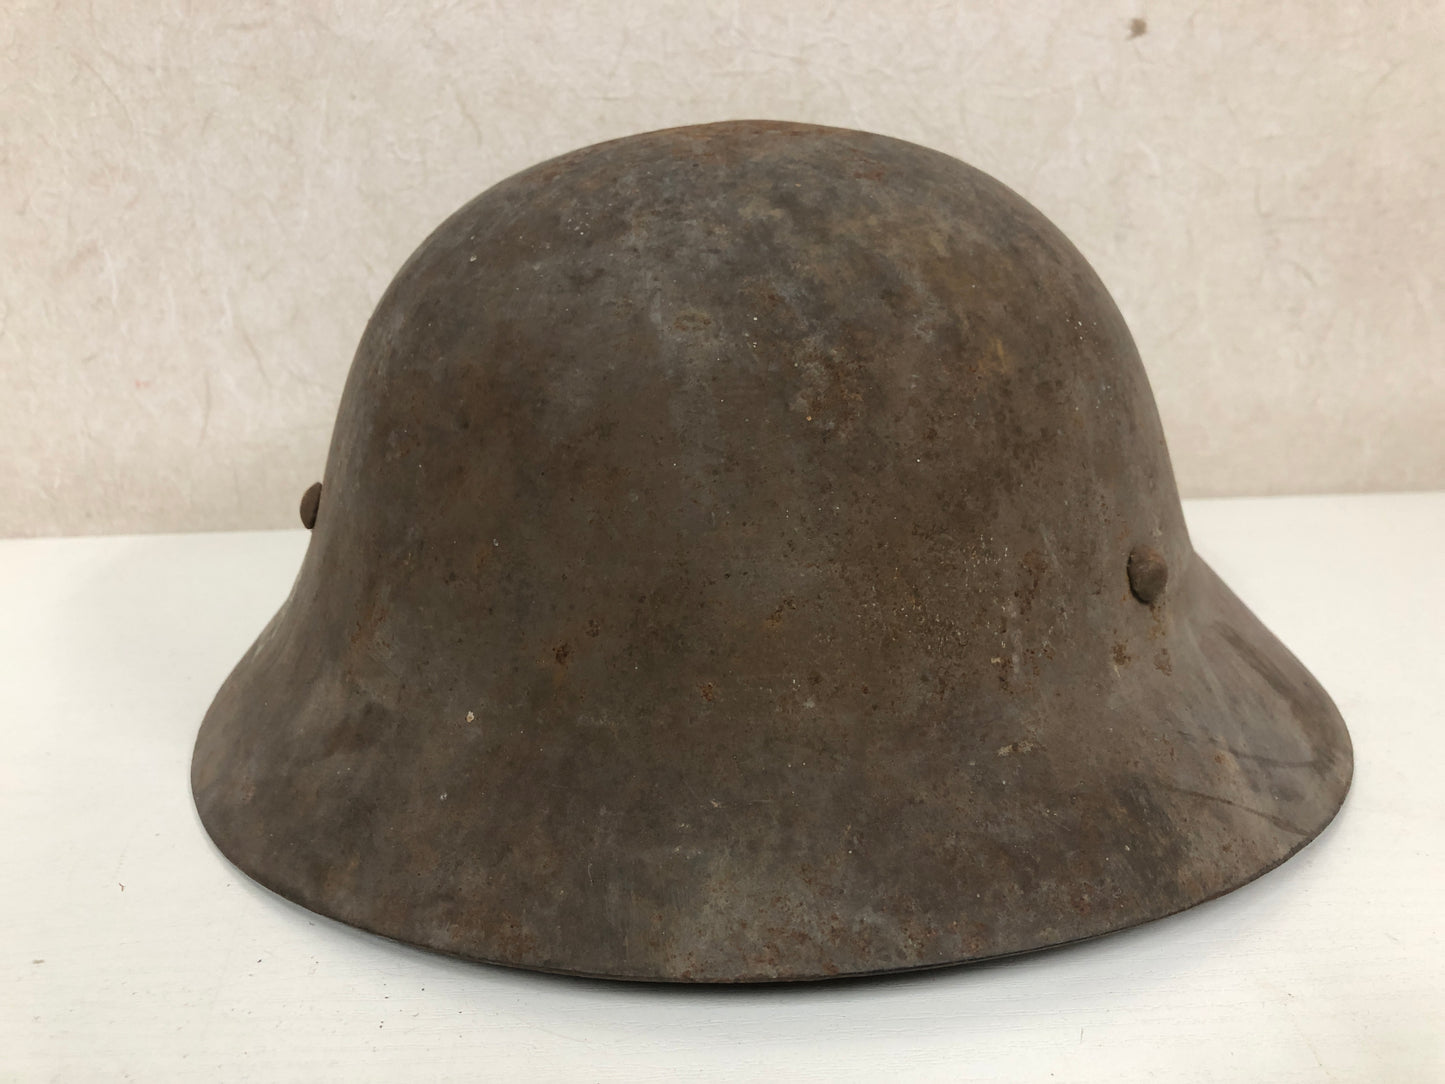 Y4065 Imperial Japan Army Iron Helmet Gaiters Bag set military Japan WW2 vintage